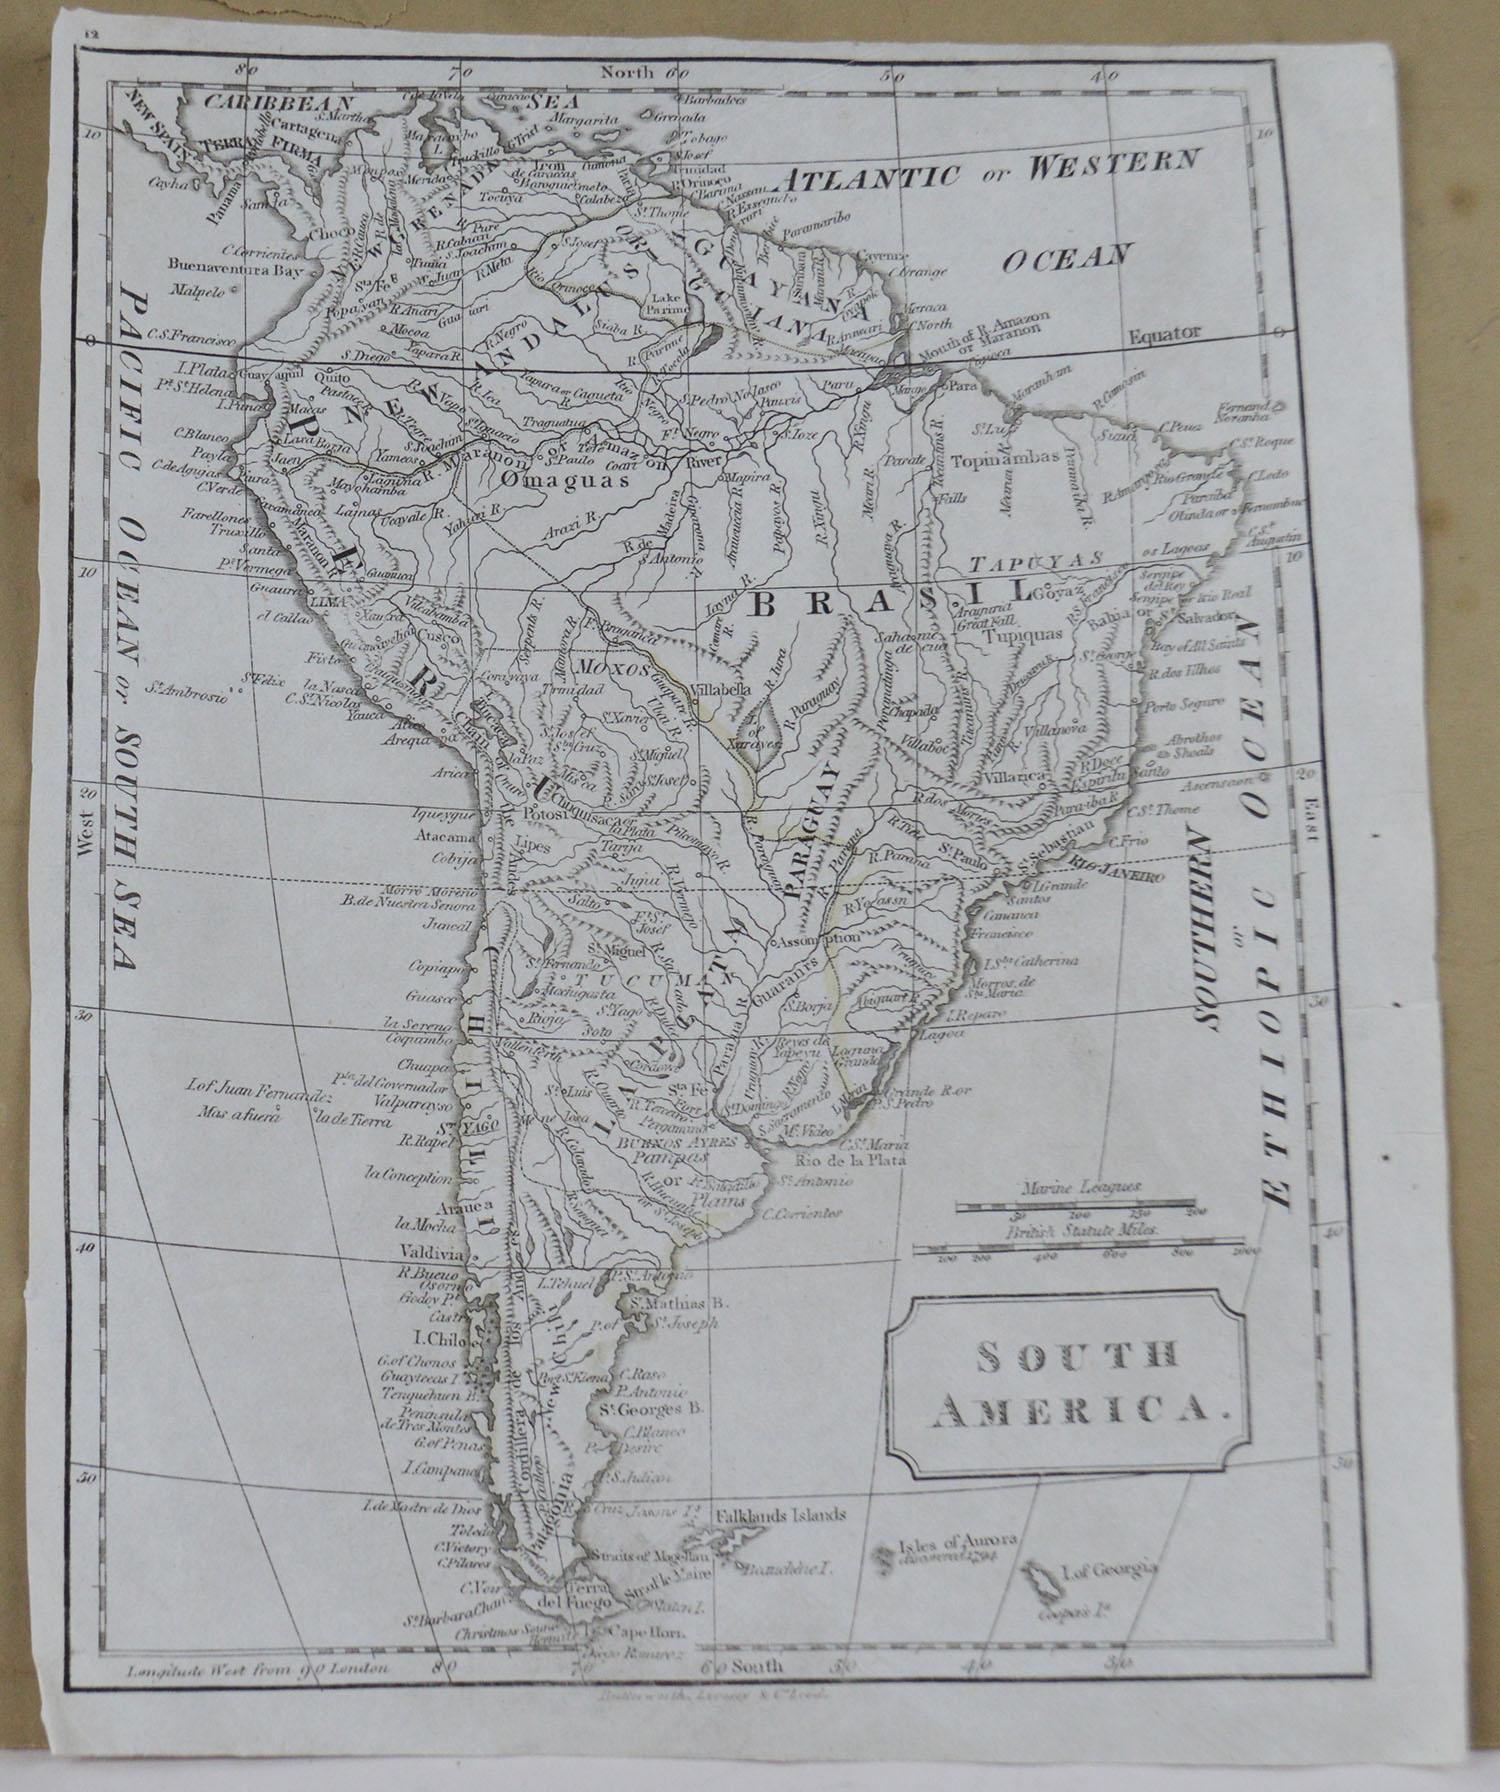 English Original Antique Map of South America, circa 1830